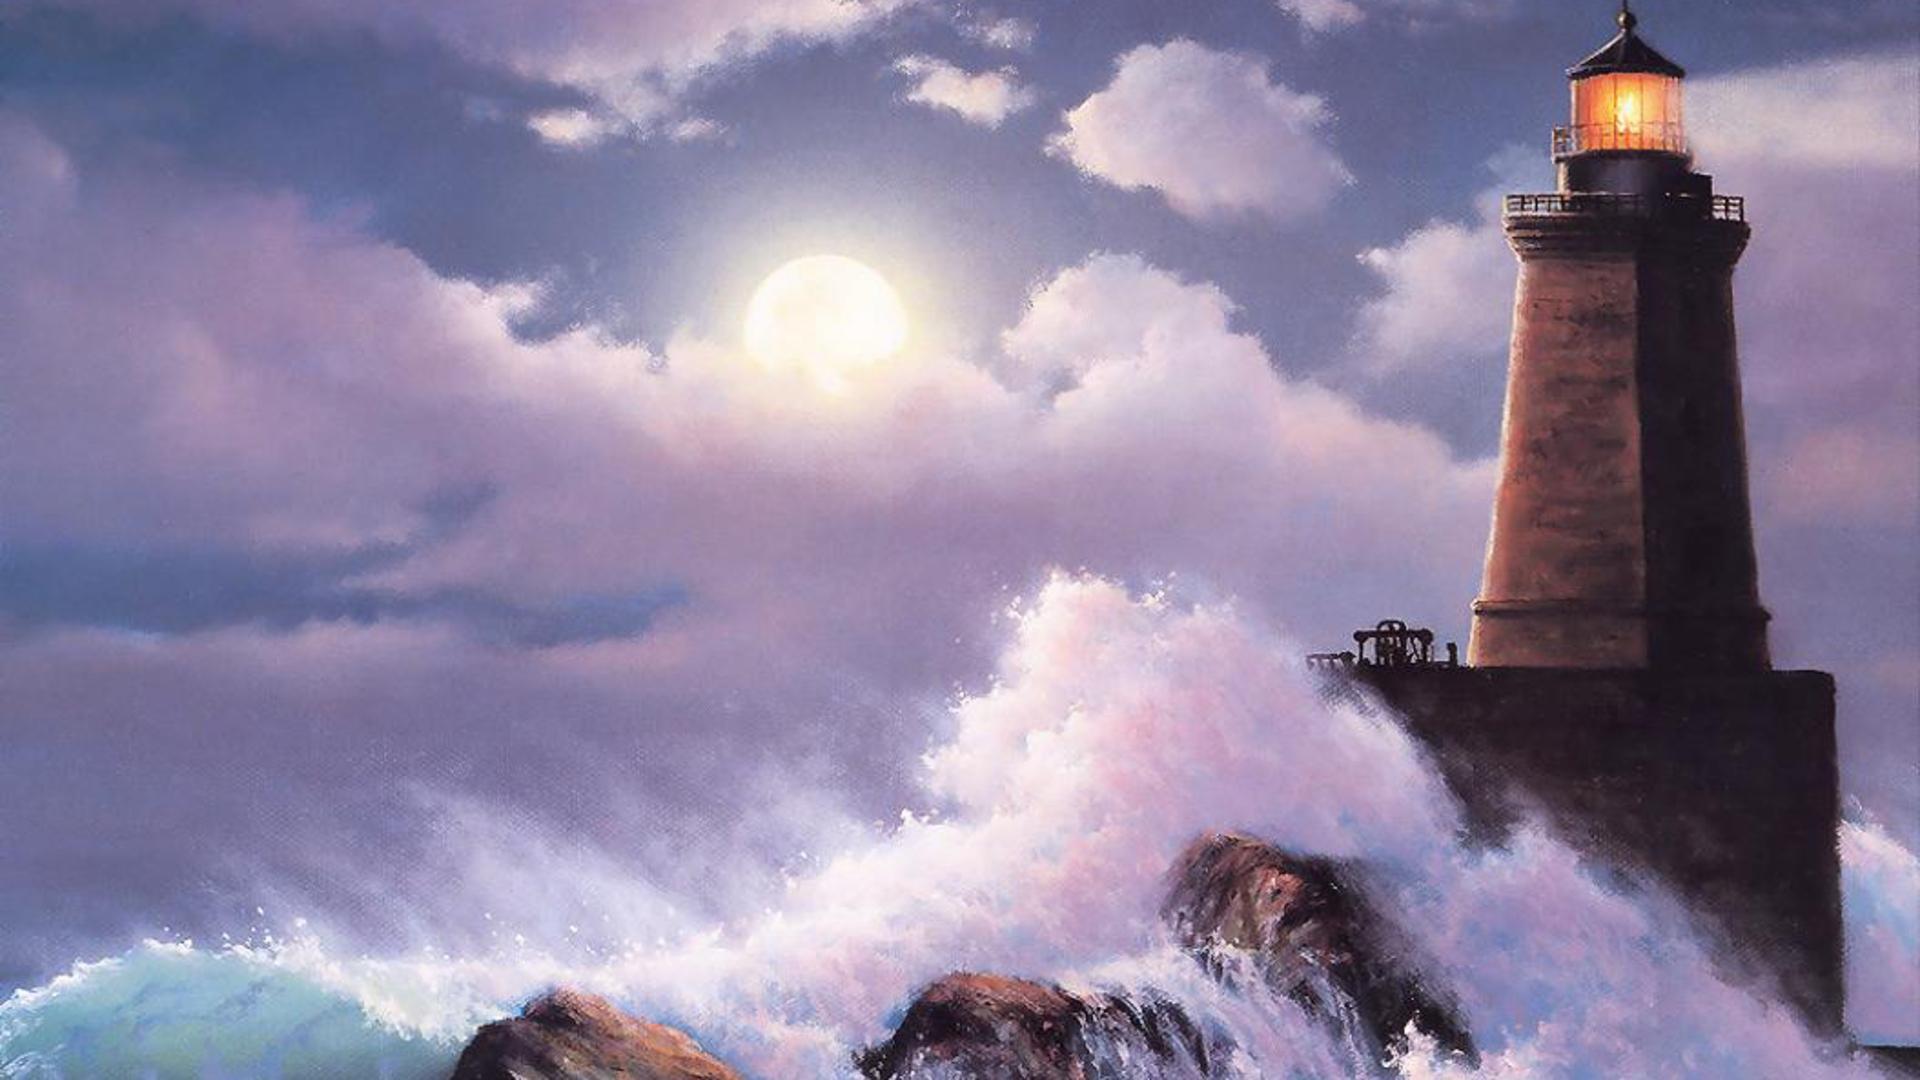 Lighthouse In Storm HD desktop wallpaper, Widescreen, High